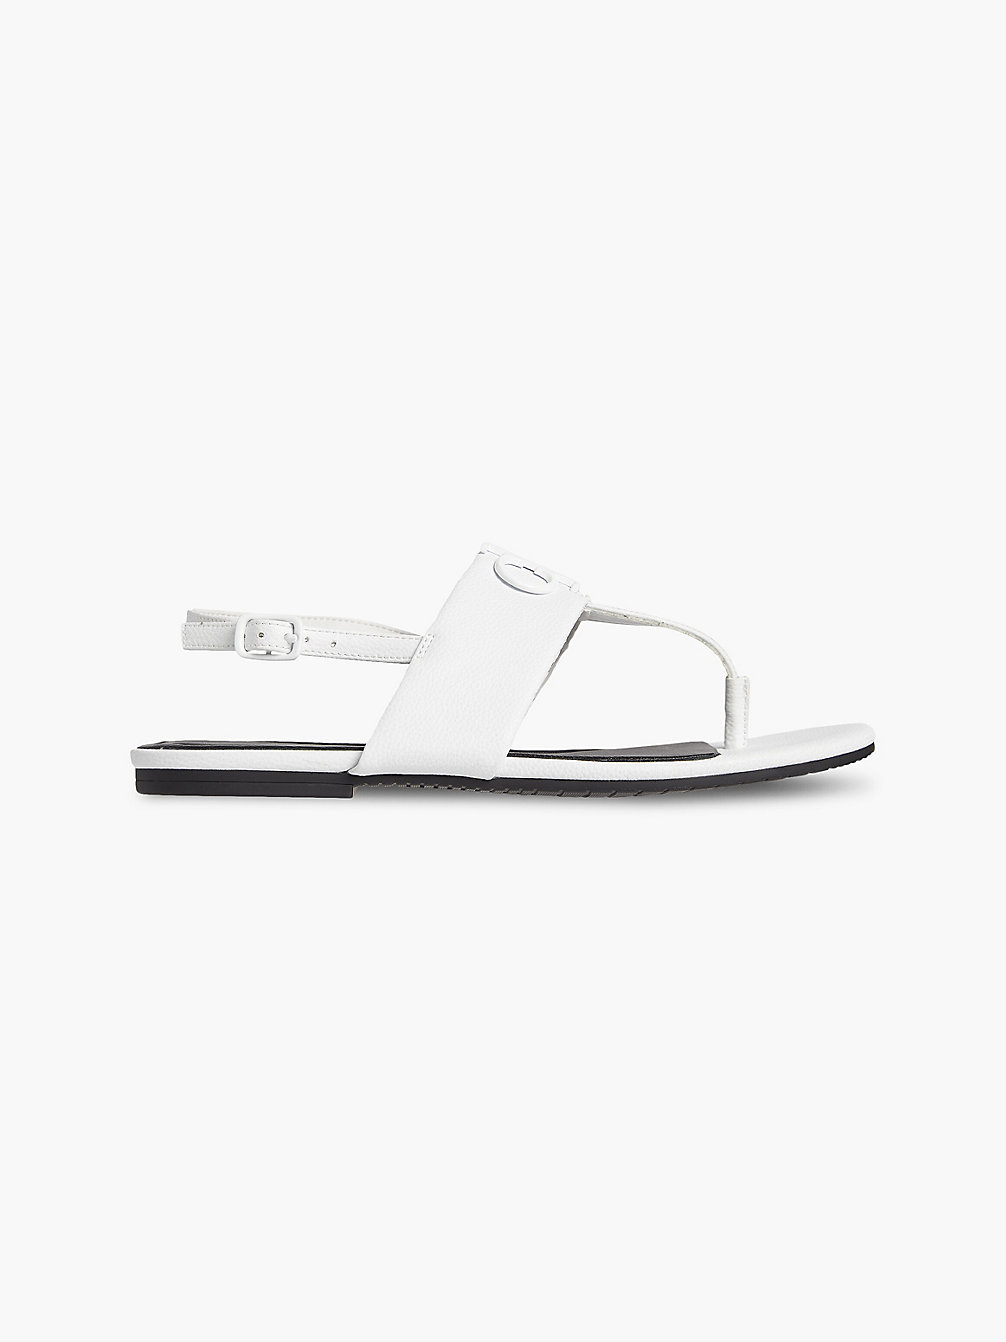 BRIGHT WHITE Leather Sandals undefined women Calvin Klein